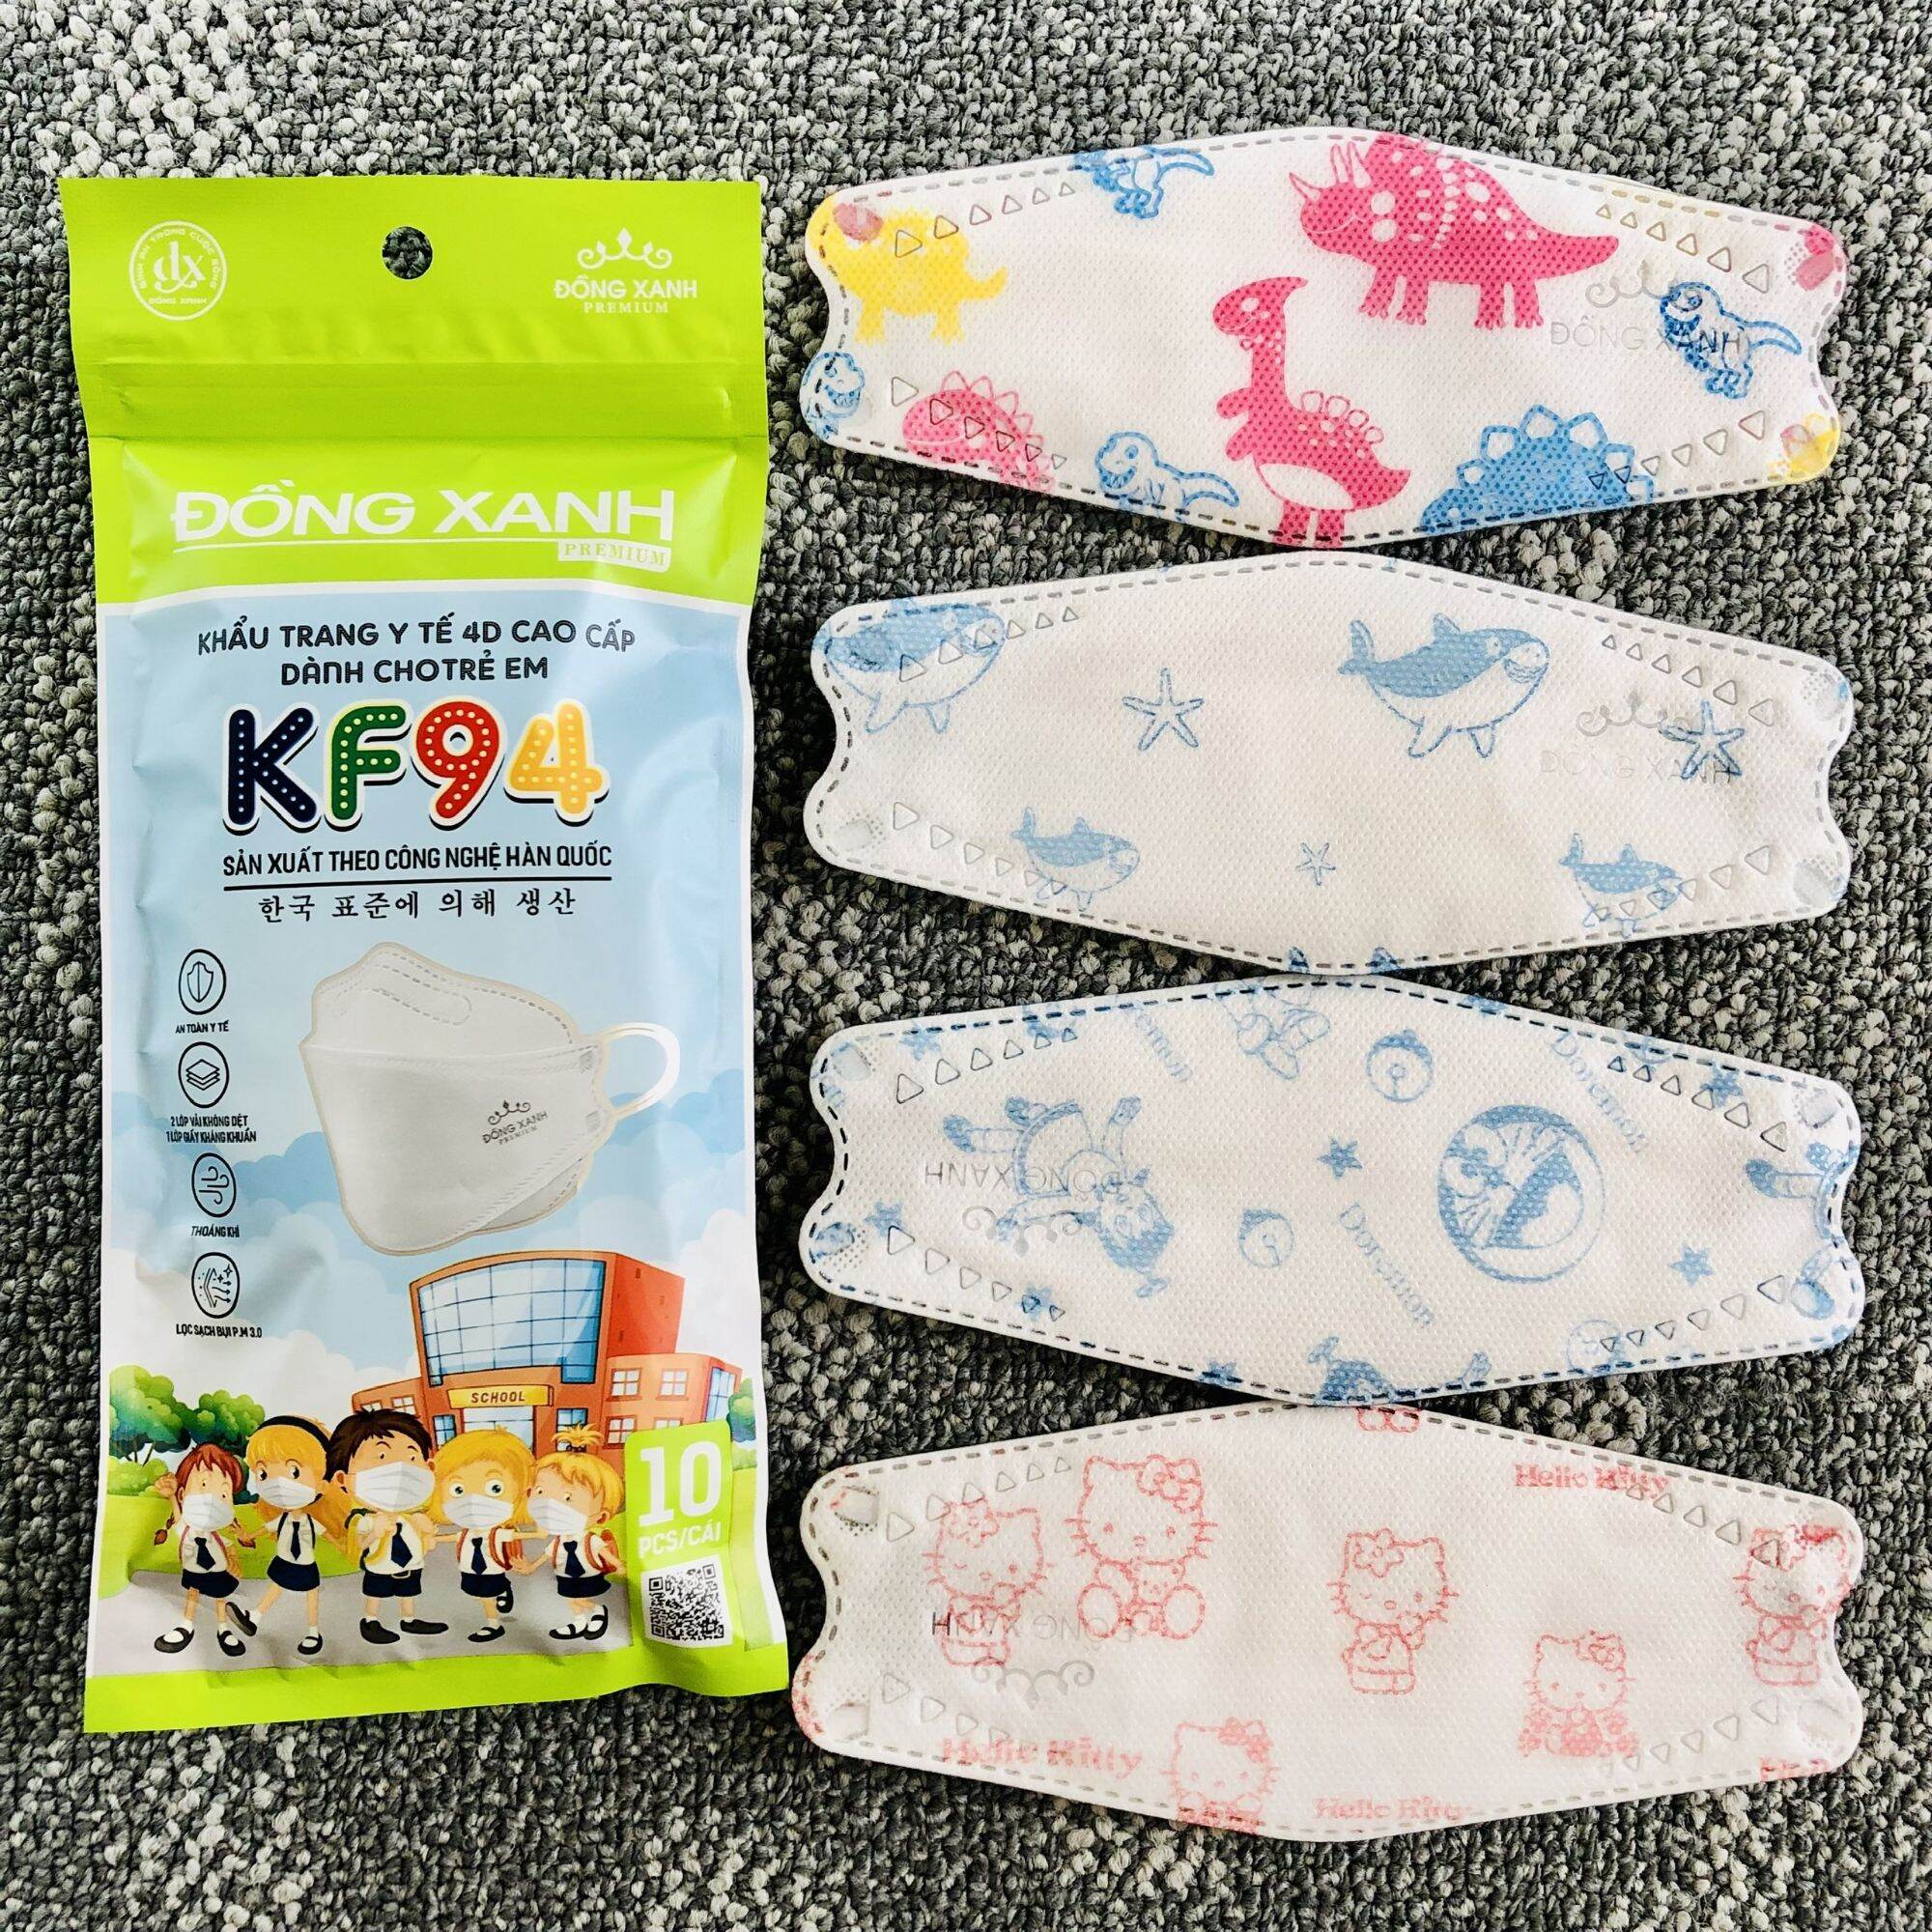 Túi khẩu trang kf94 trẻ em đồng xanh premium 10 cái túi - ảnh sản phẩm 3